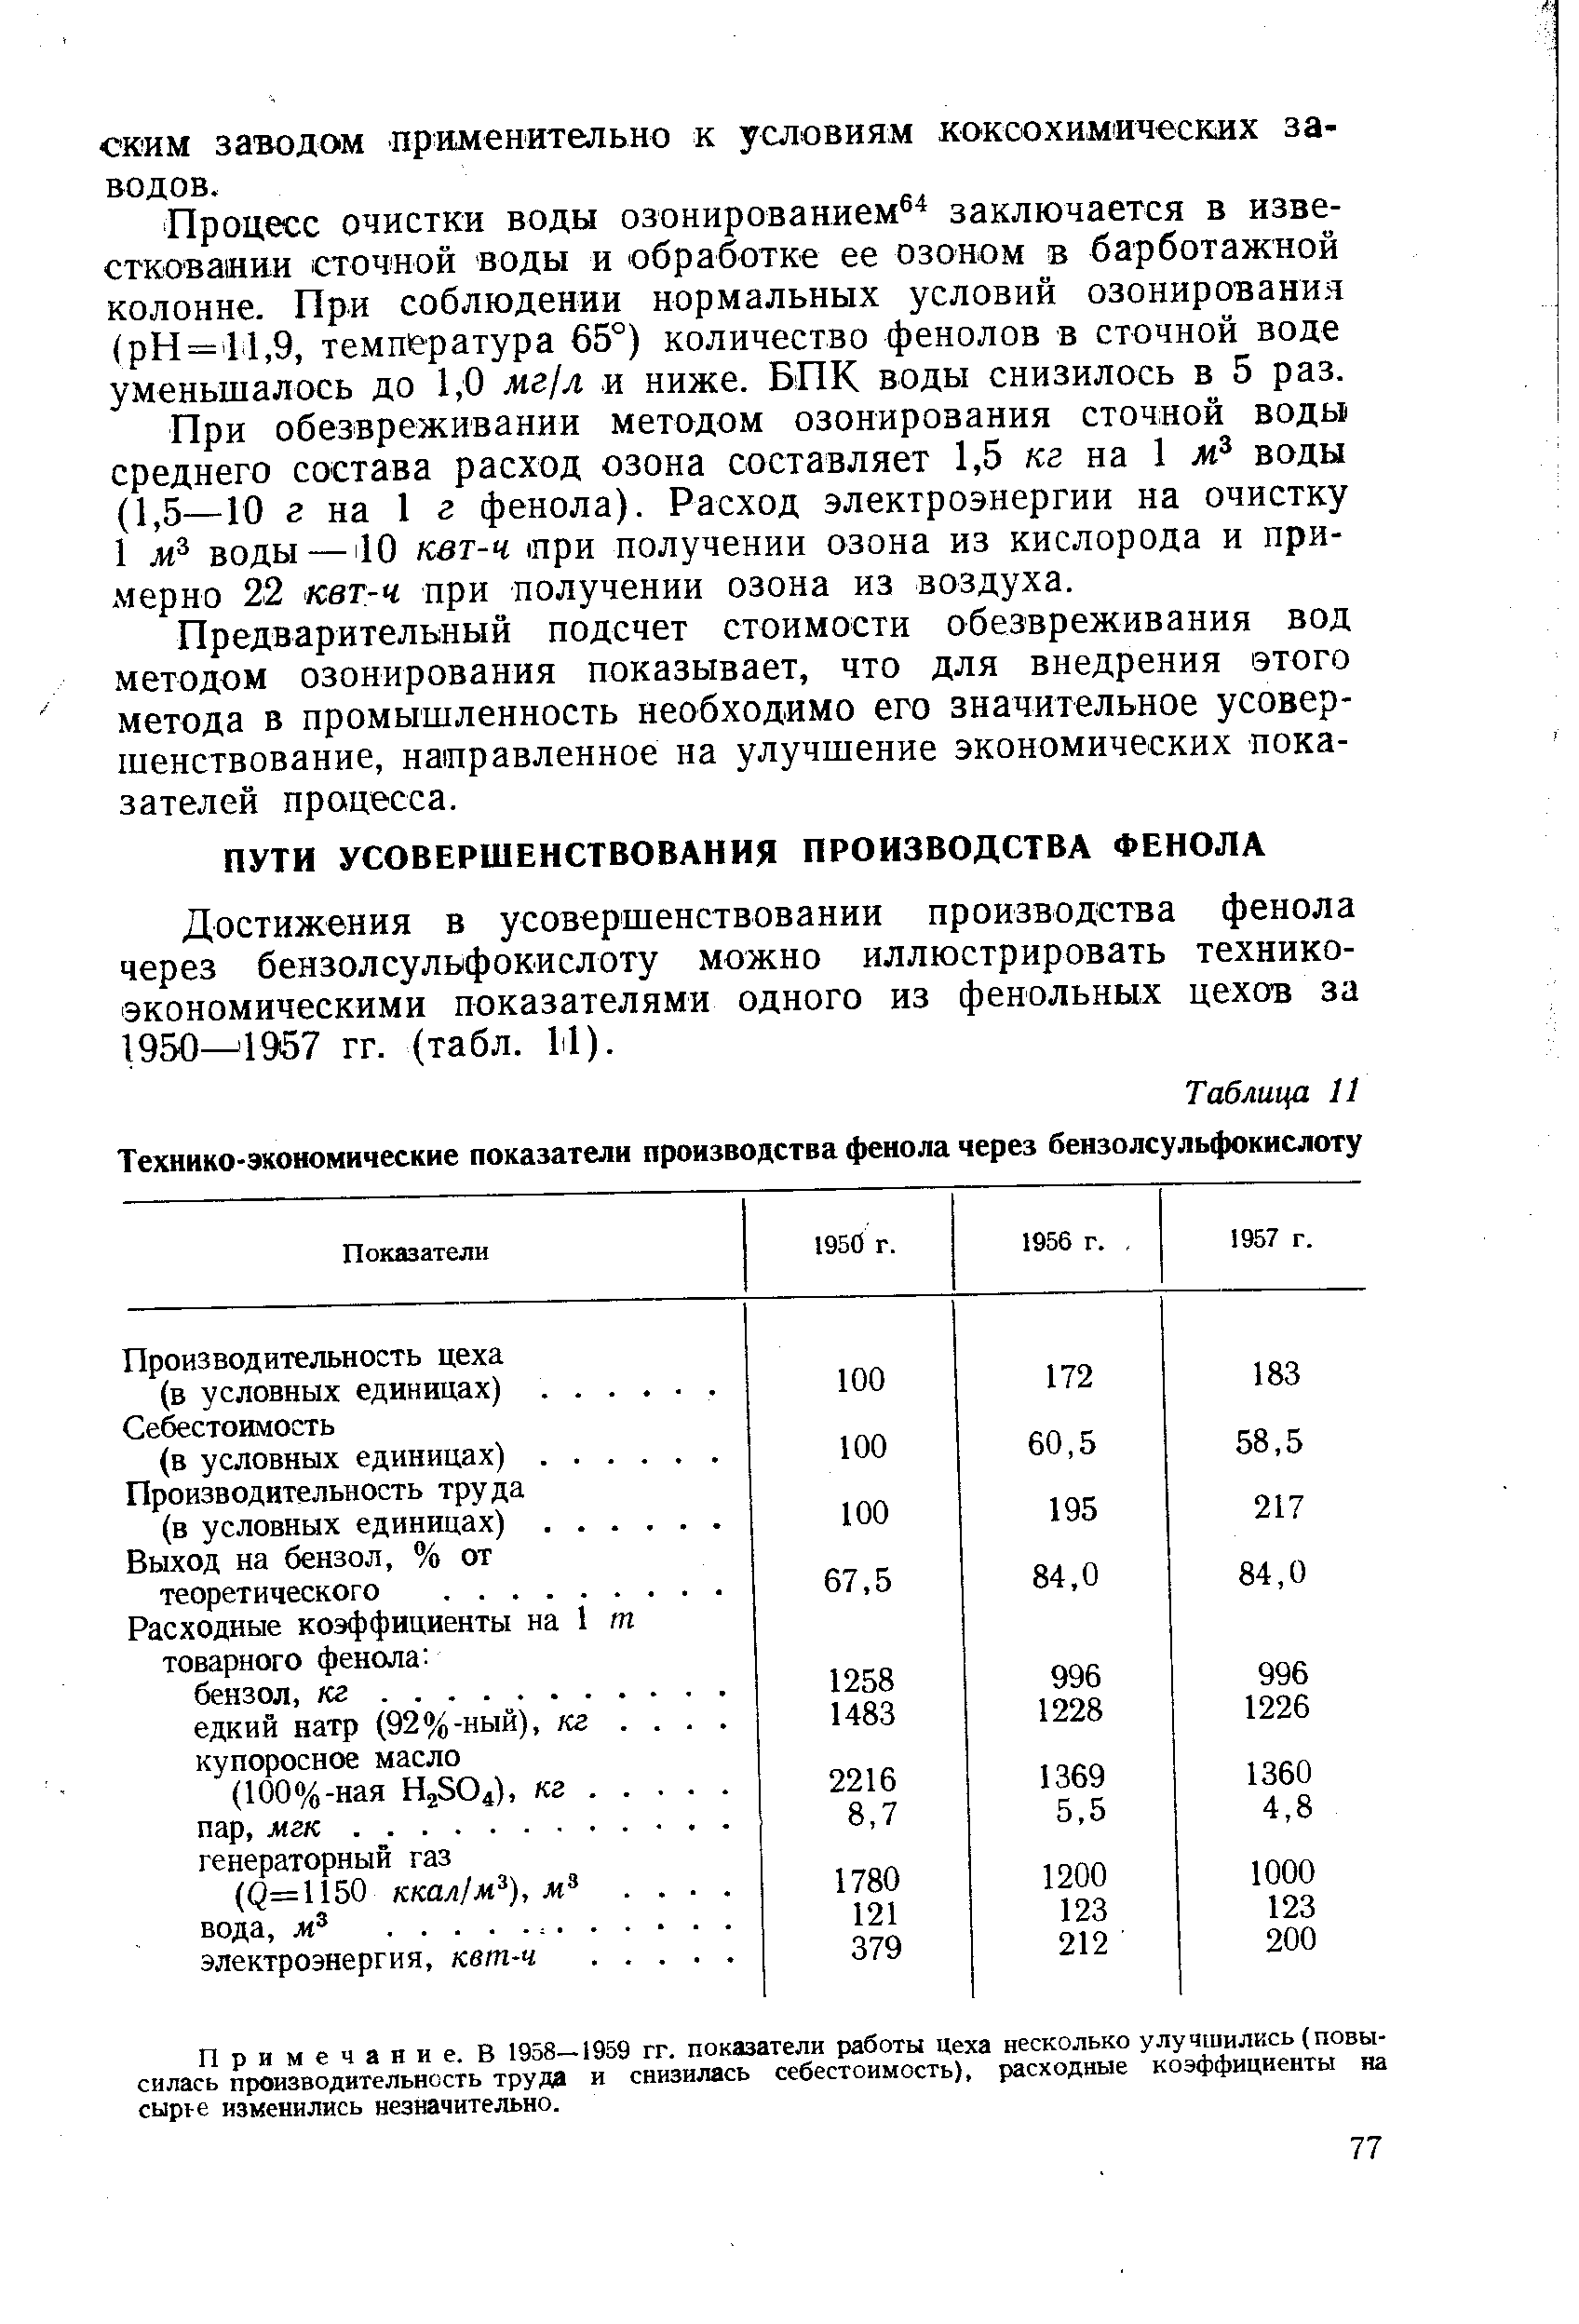 Достижения в усовершенствовании производства фенола через бензолсульфокислоту можно иллюстрировать технико-экономическими показателями одного из фенольных цехов за 1950 1957 гг. (табл. М).